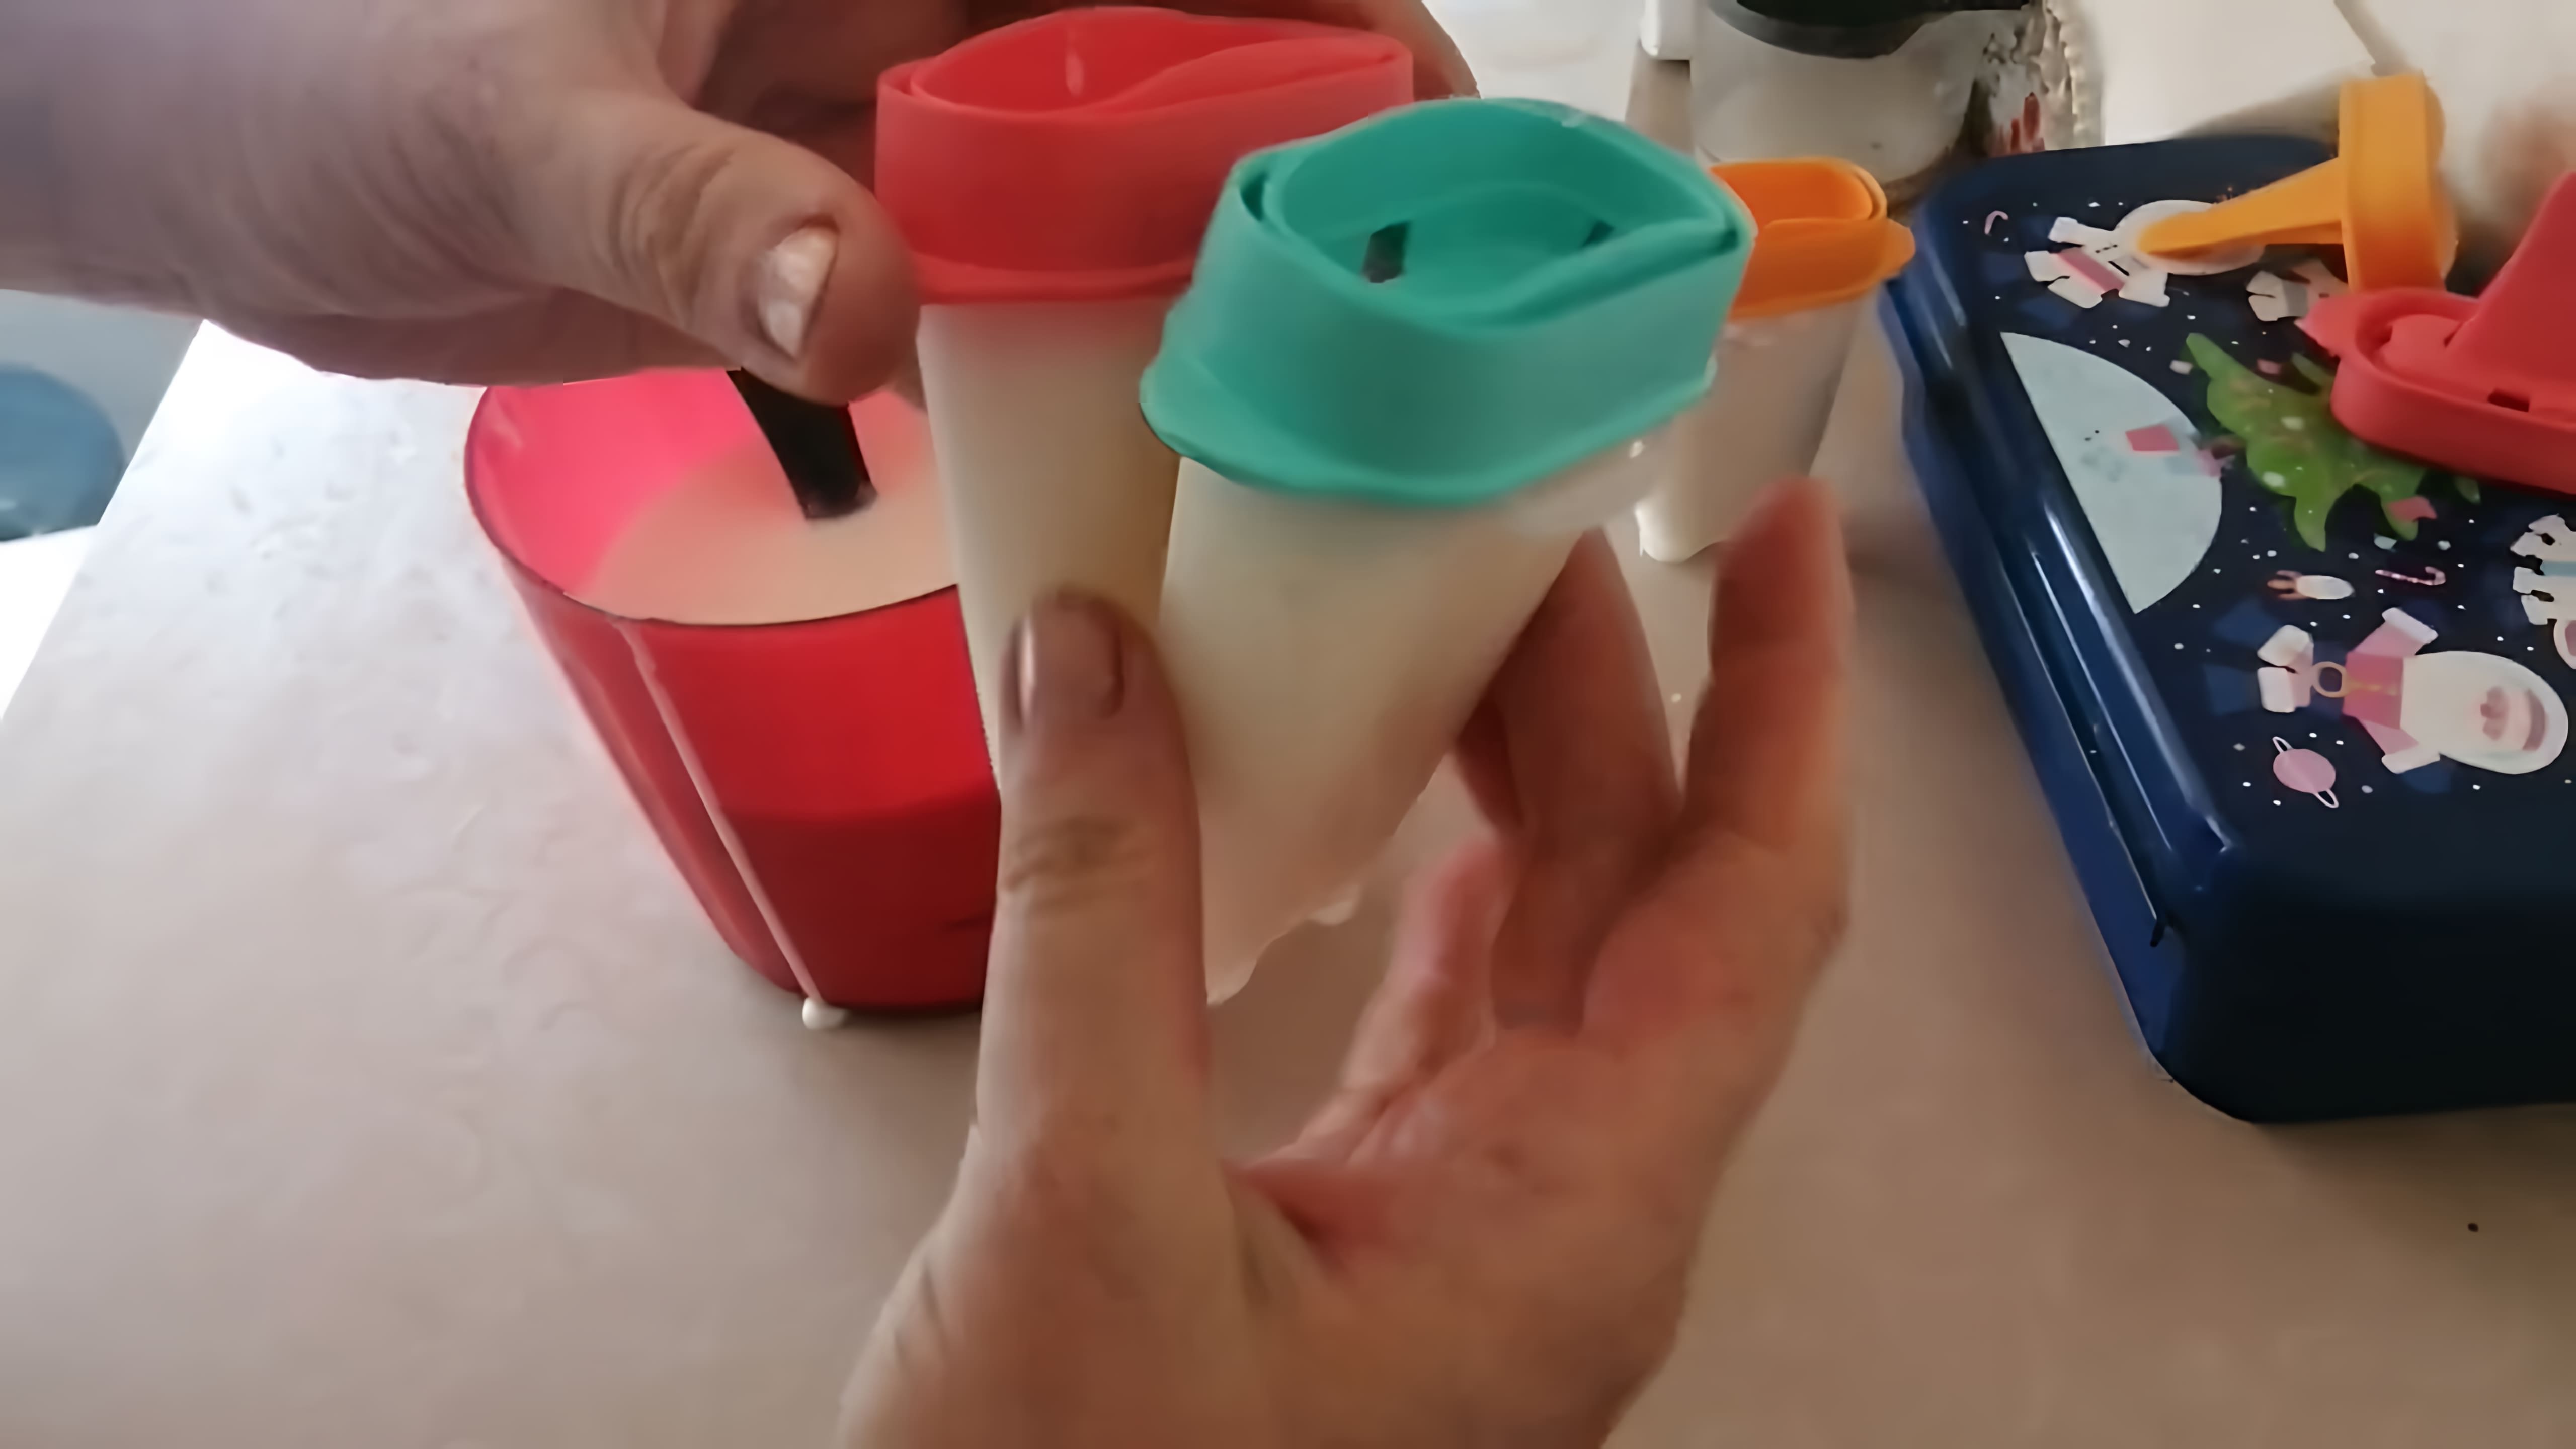 В этом видео демонстрируется процесс приготовления сырного мороженого в формочках для мороженого